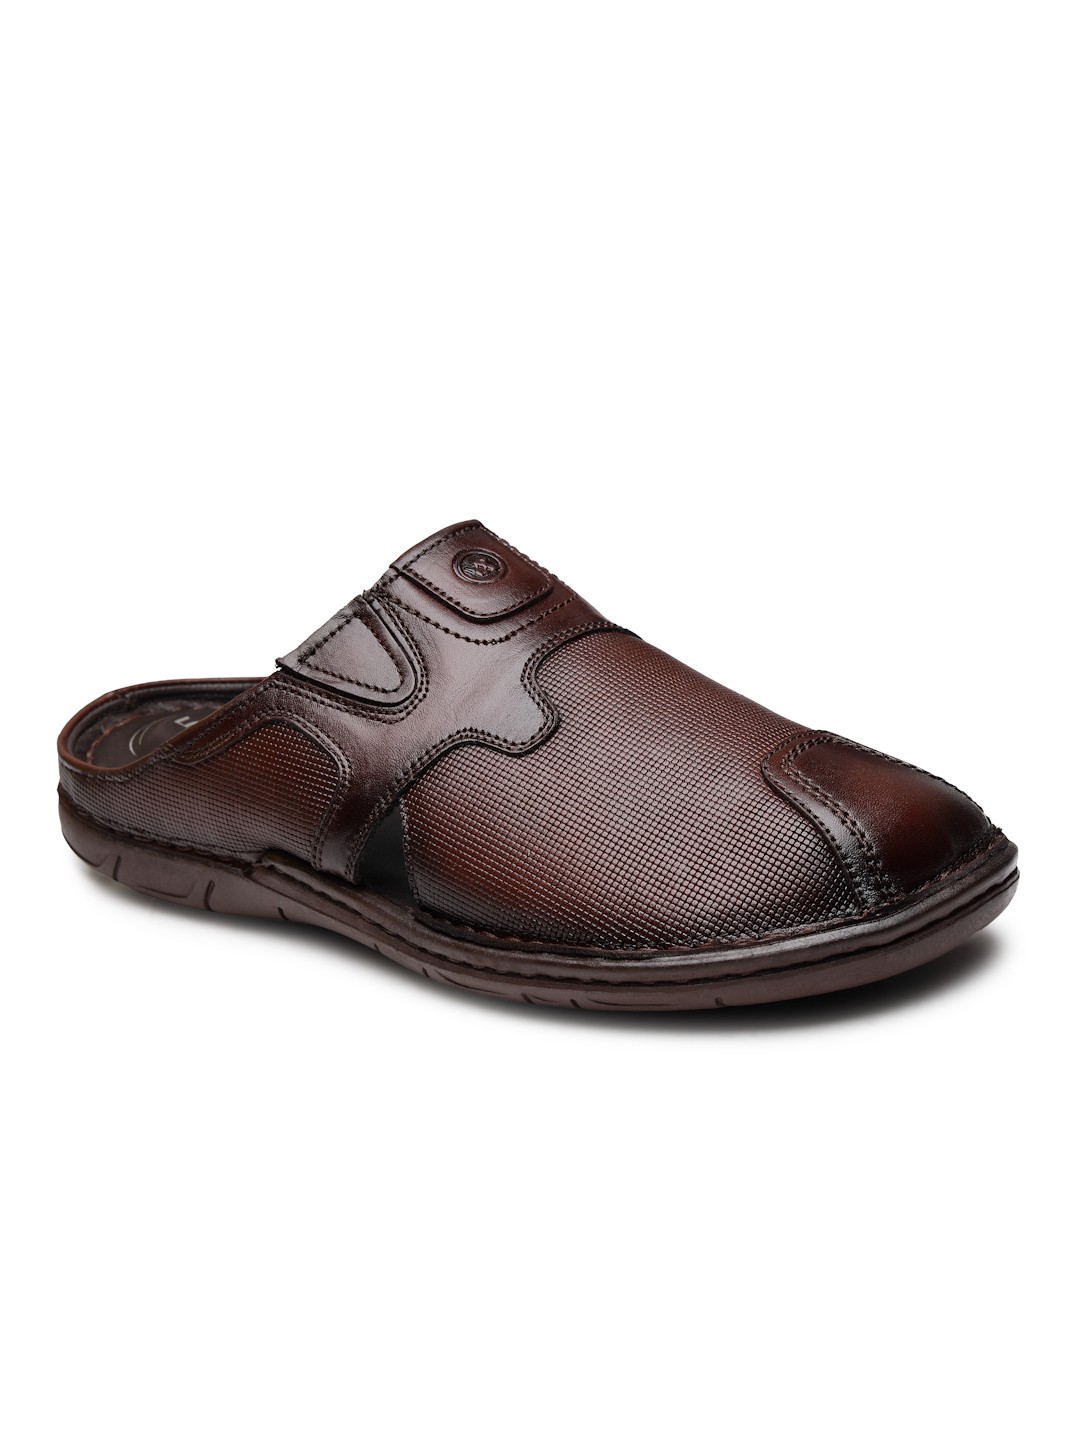 Buy Von Wellx Germany Comfort Men's Brown Slippers Arlo Online in Faridabad